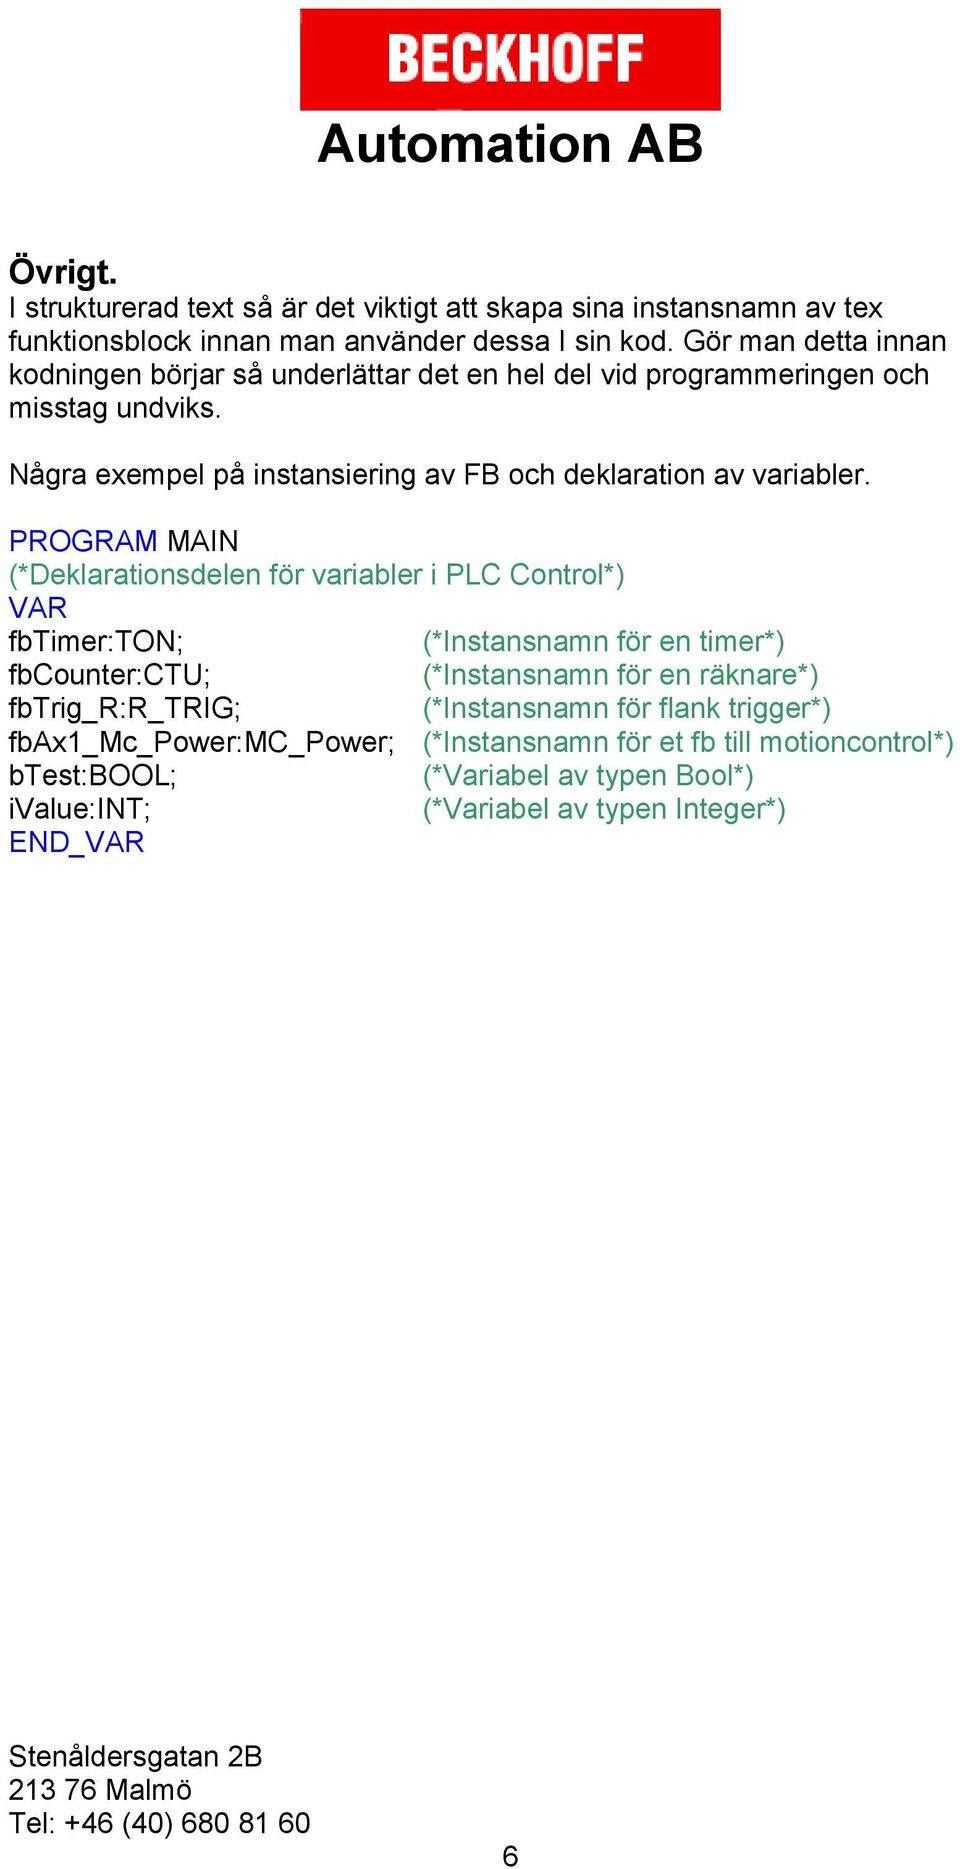 Några exempel på instansiering av FB och deklaration av variabler.